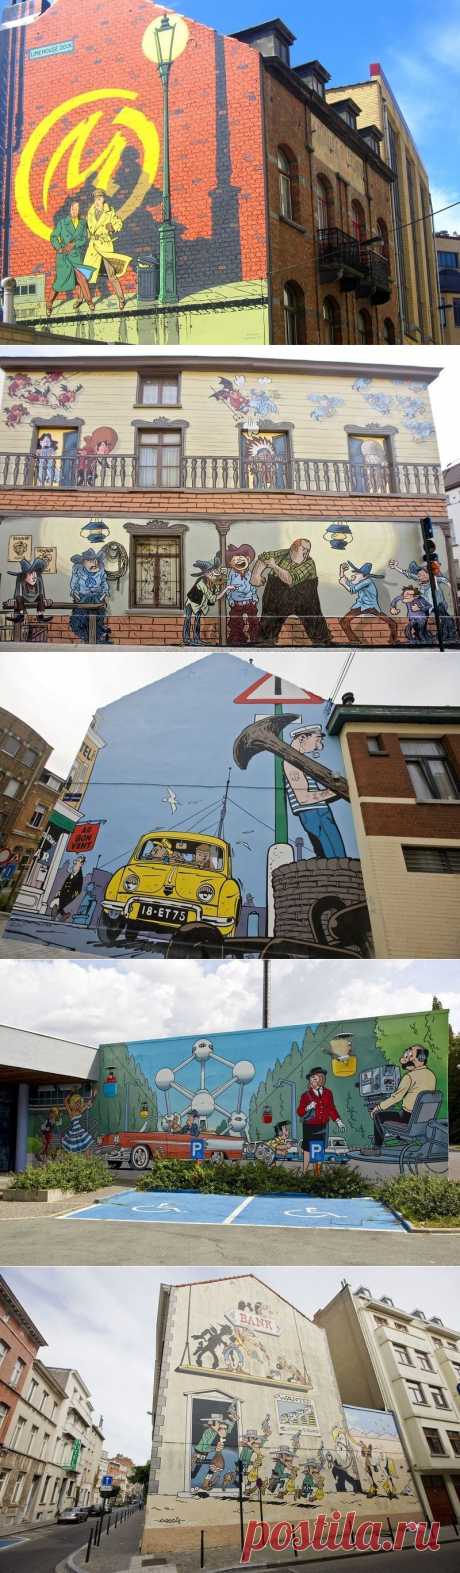 ФотоТелеграф » Комиксы на стенах домов в Брюсселе